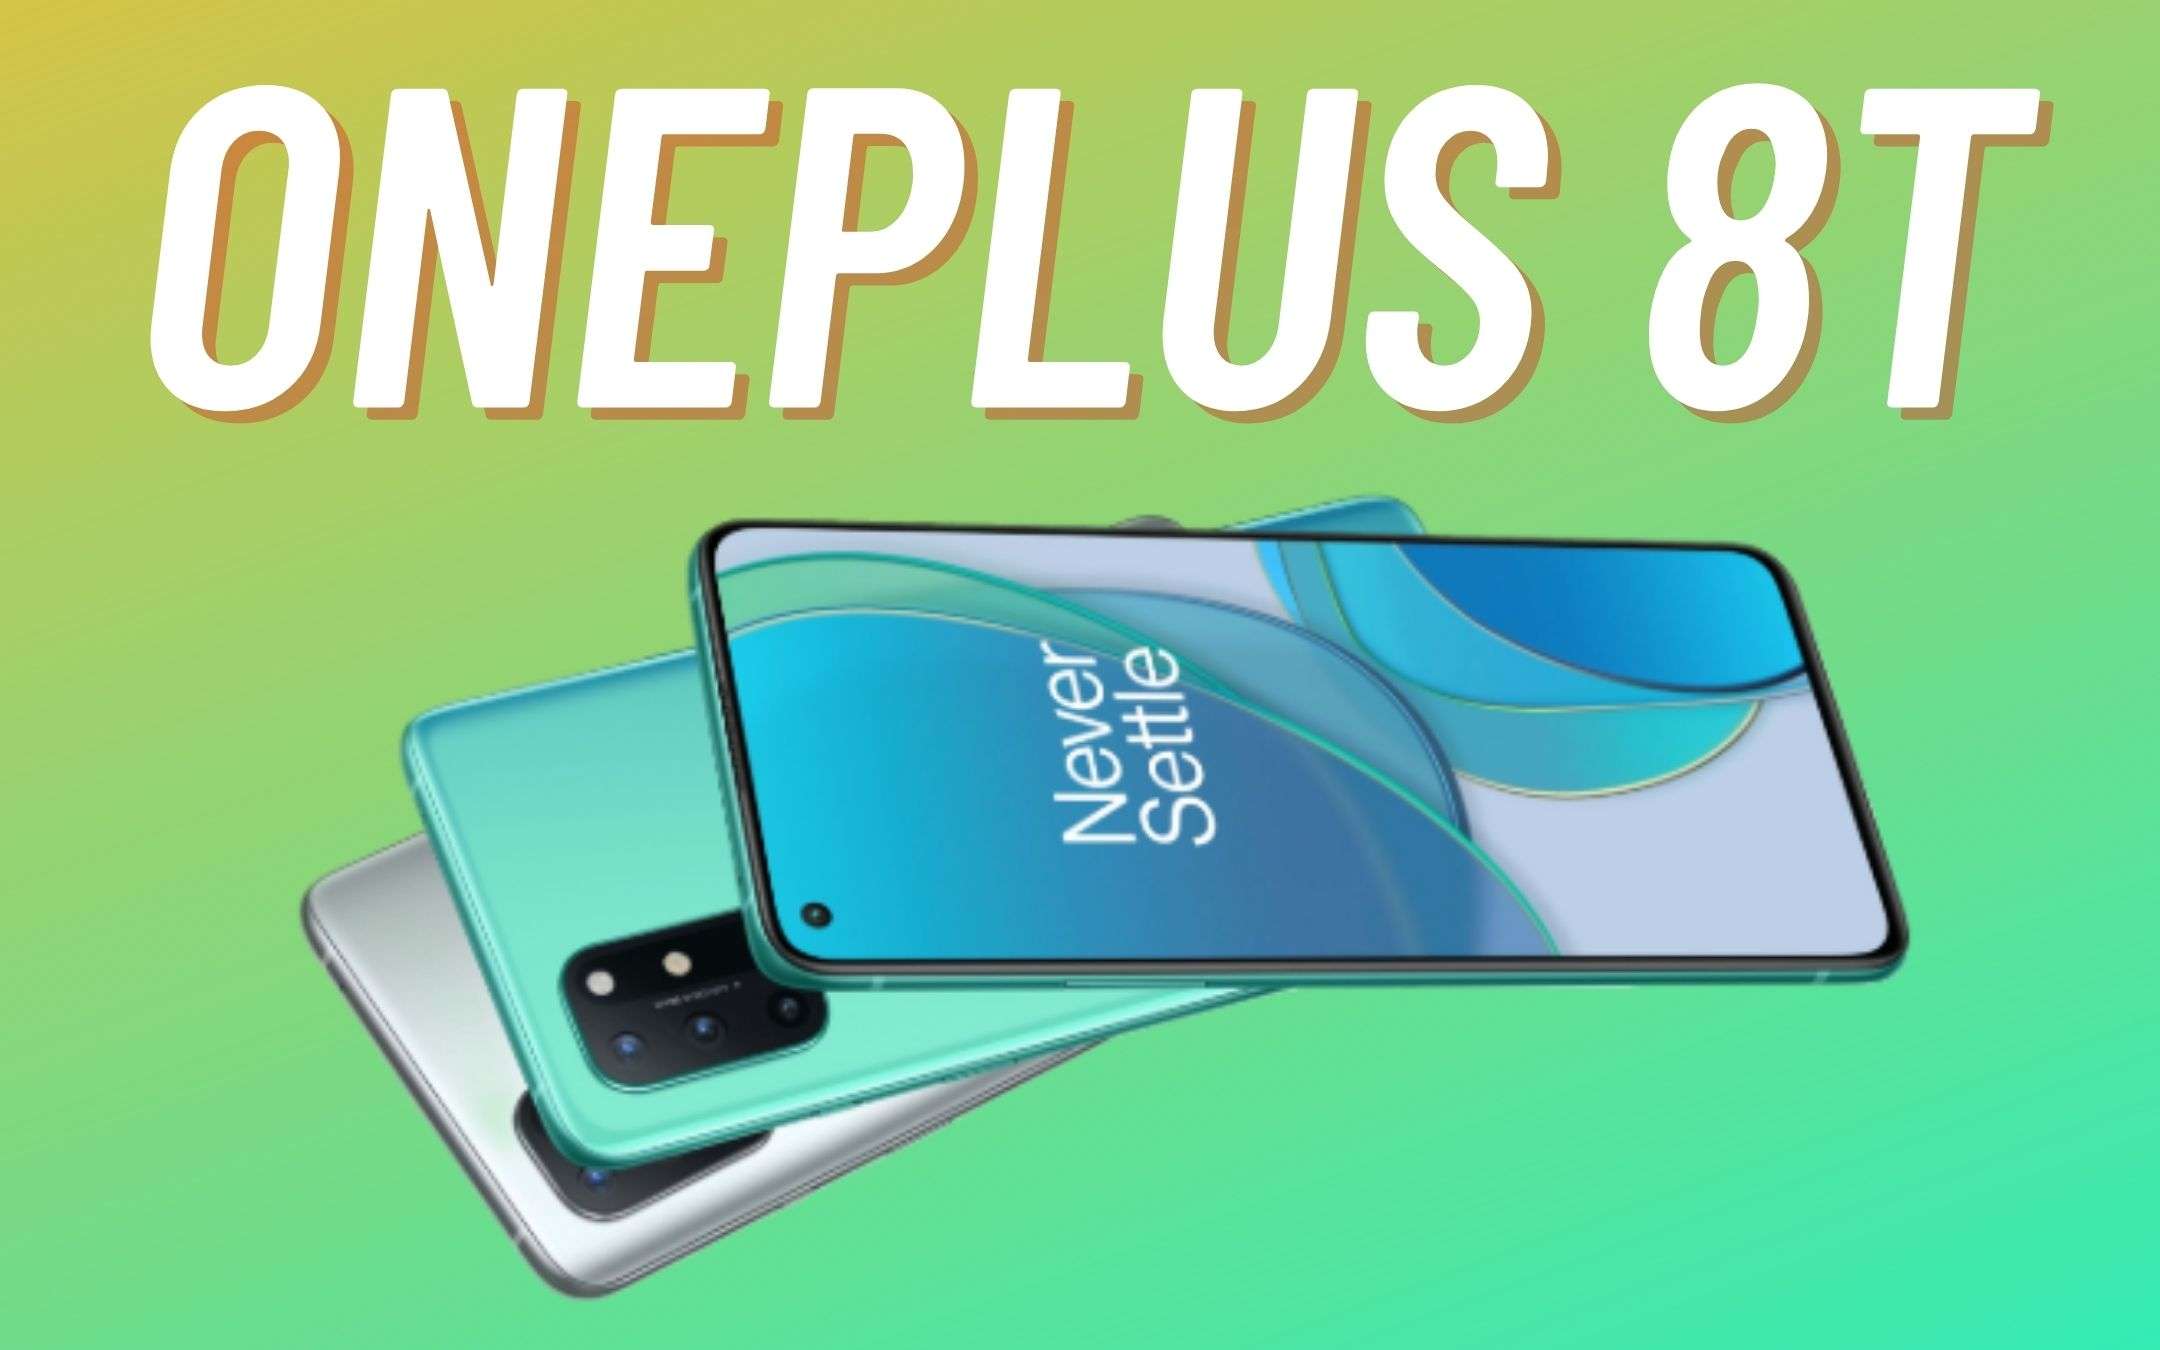 Aggiornate subito i vostri OnePlus 8 e 8T!